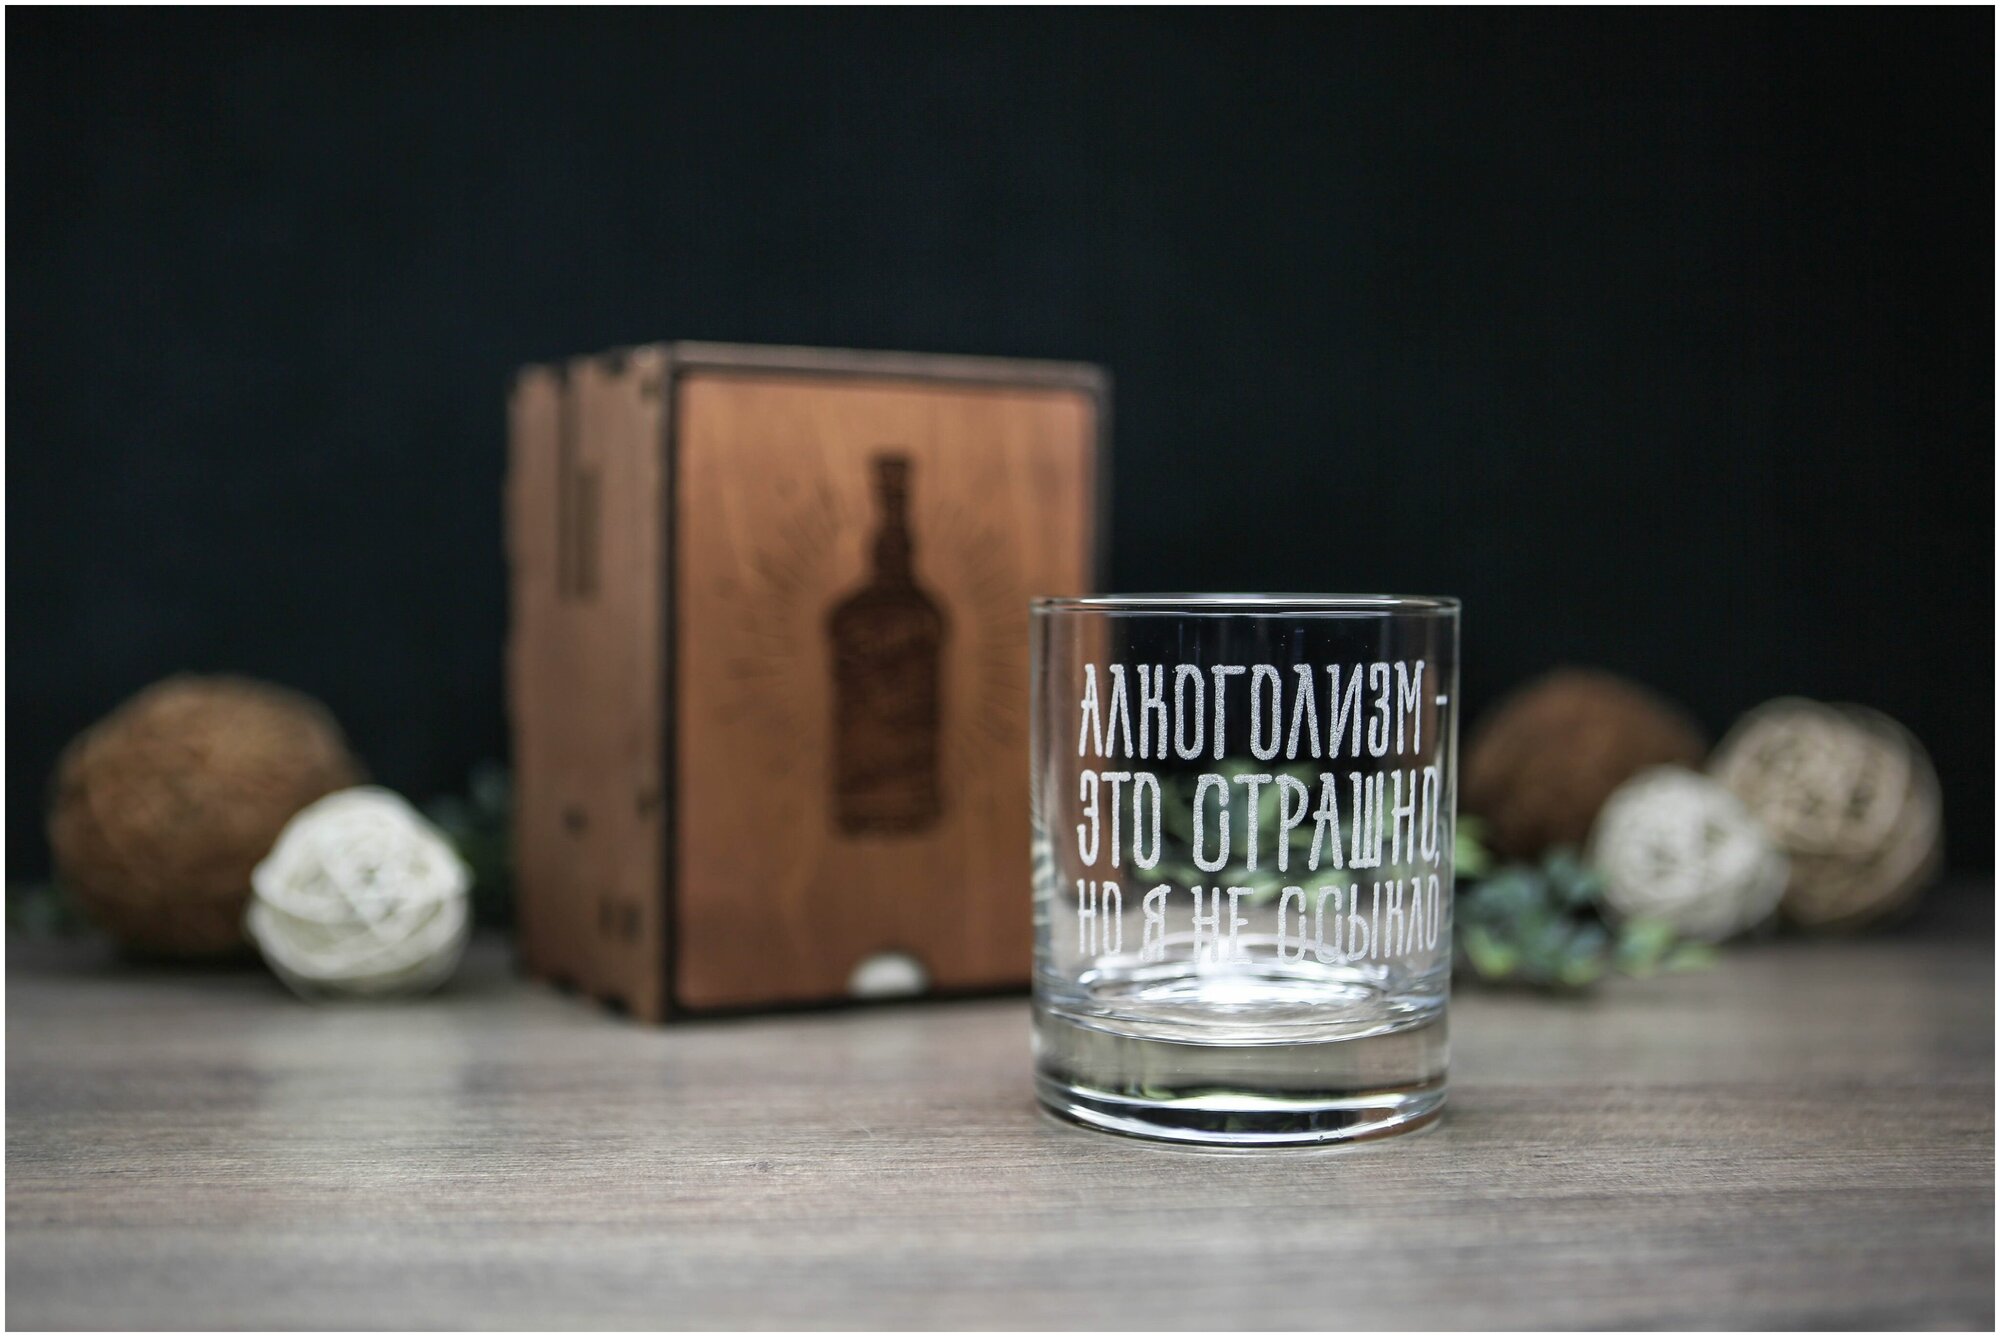 Подарочный набор стакан для виски с гравировкой алкоголизм и камнями для виски / подарок мужу, парню, другу, брату